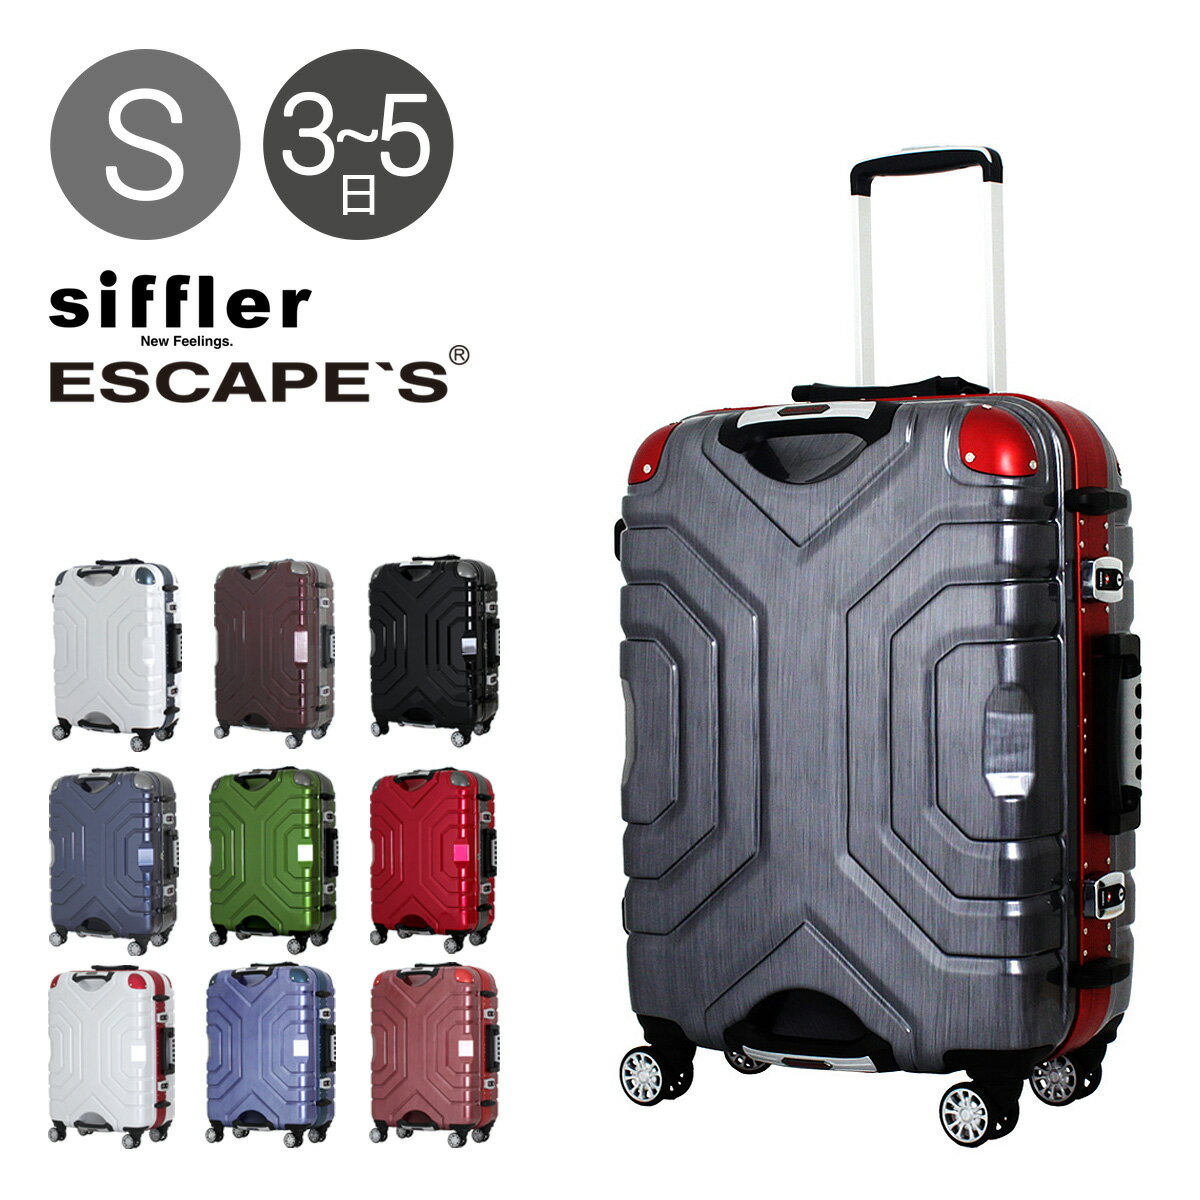 シフレ スーツケース 58cm エスケープ グリップマスター B5225T-58 Siffler ESCAPE'S キャリーケース 1年保証 TSAロック搭載 [PO10]